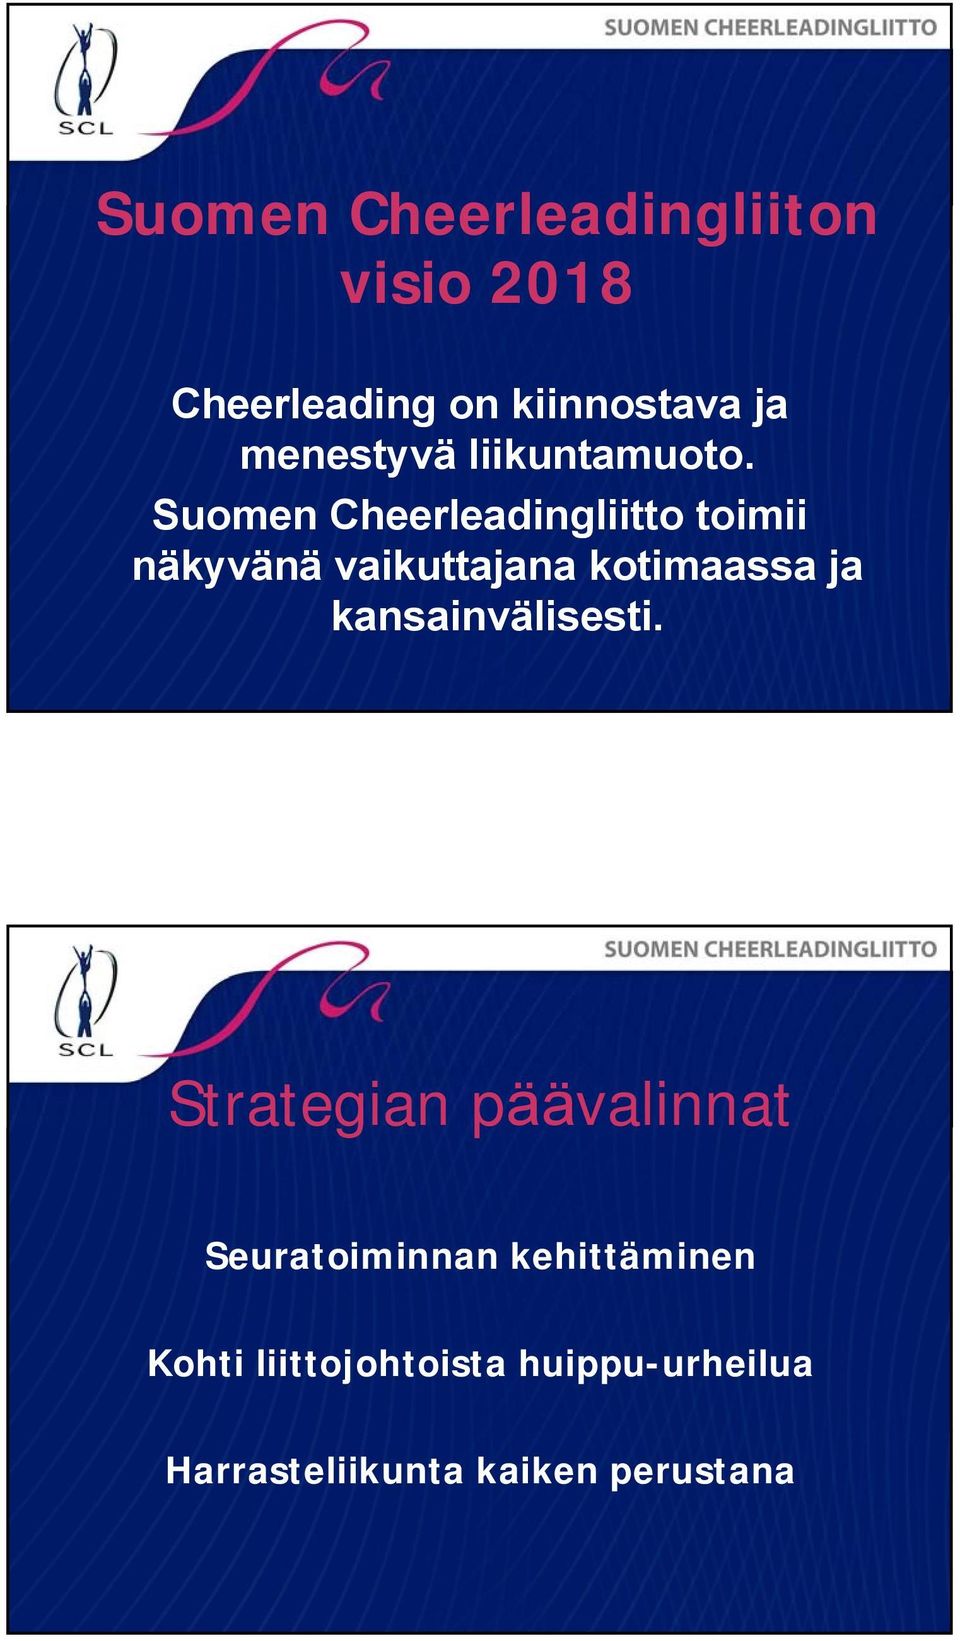 Suomen Cheerleadingliitto toimii näkyvänä vaikuttajana kotimaassa ja